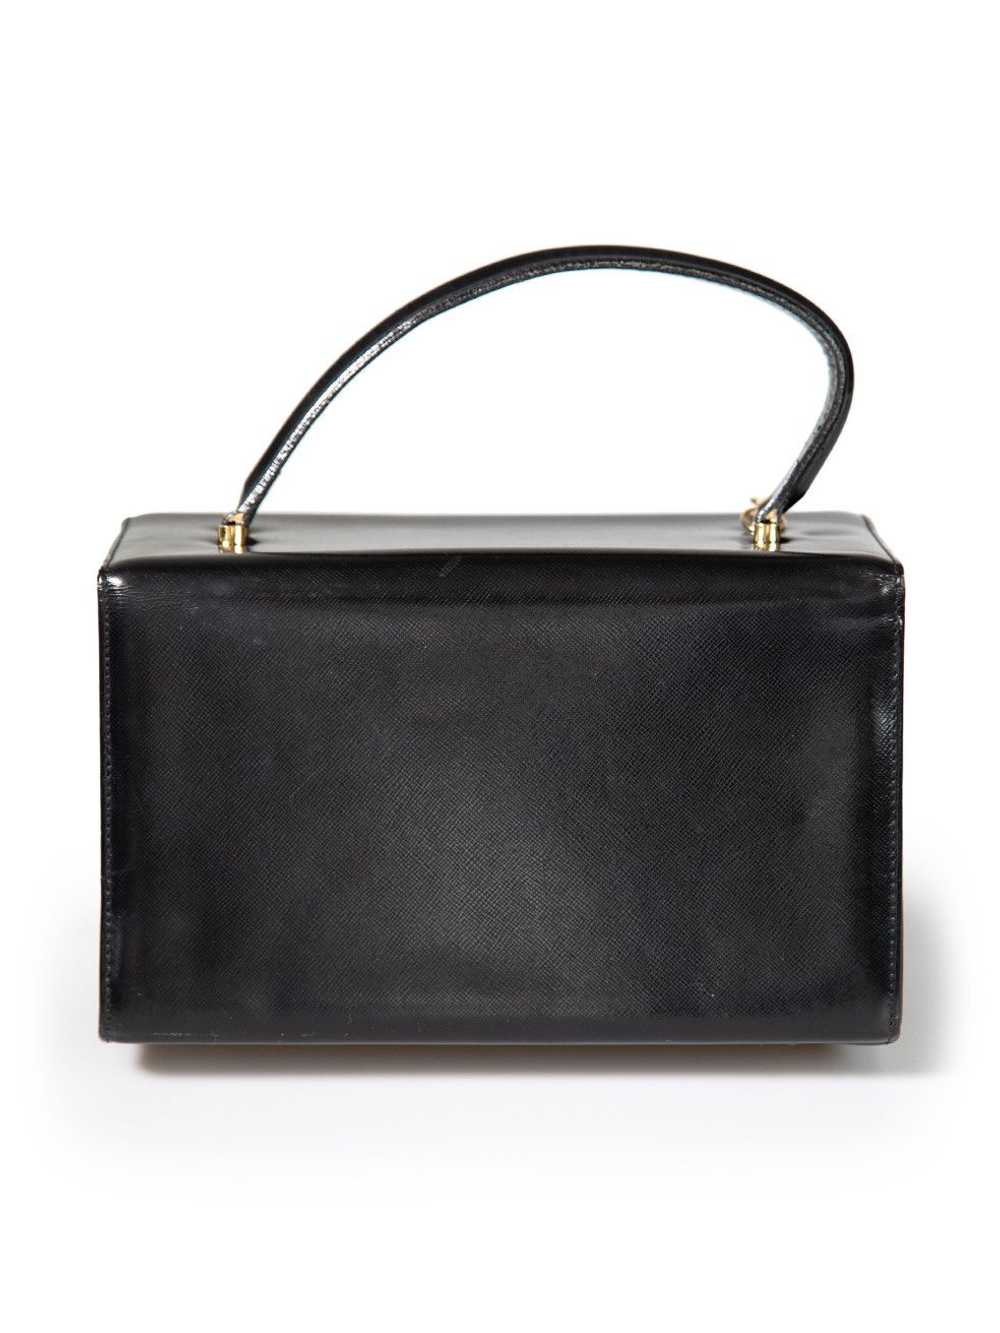 Versace Black Leather Vanity Top Handle Bag - image 3